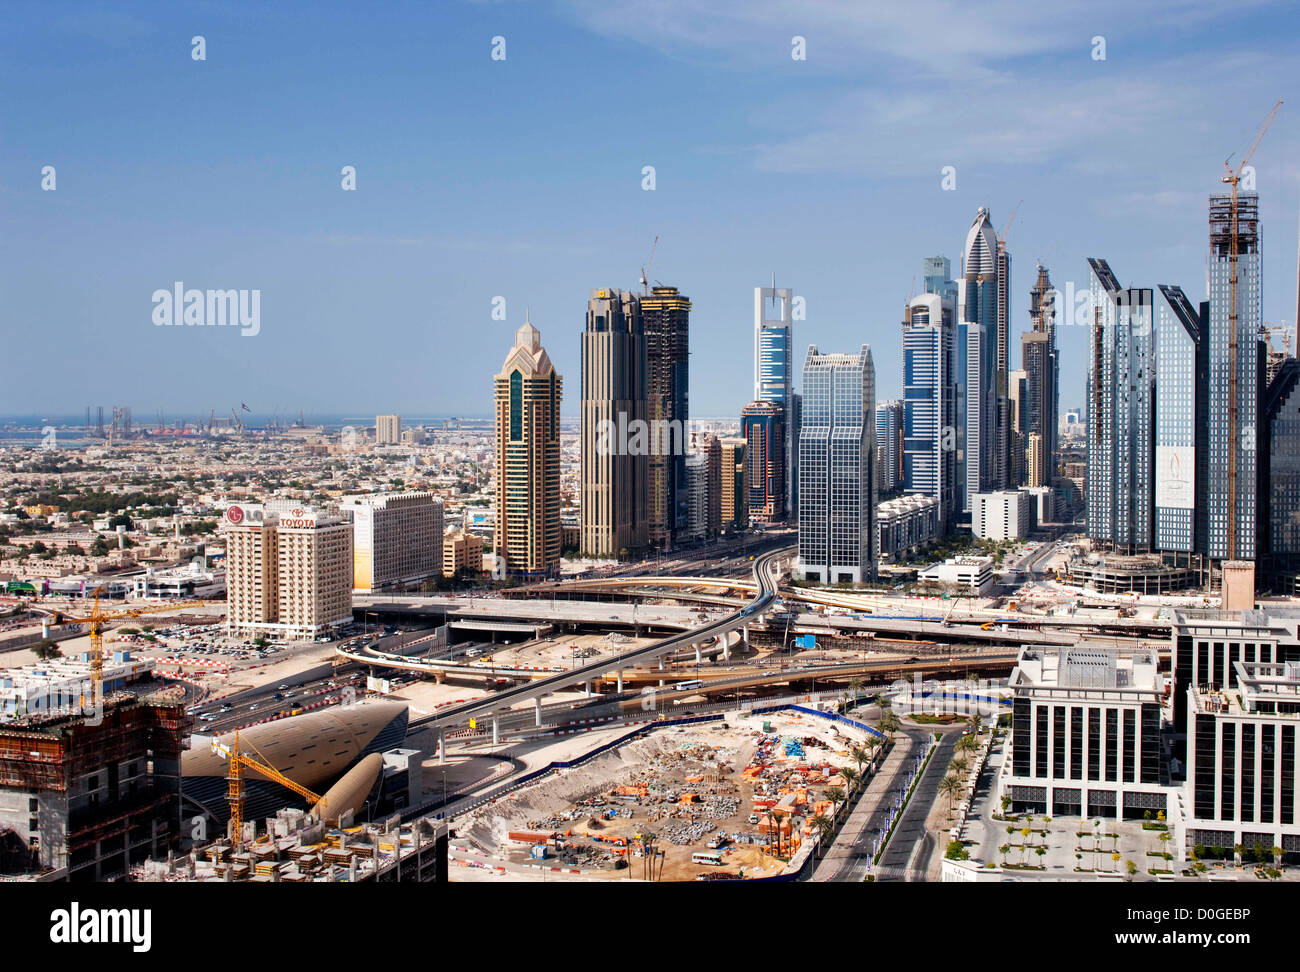 Dubai se ha vuelto conocido como el patio de recreo para los arquitectos y cualquier horizonte dará testimonio de ello. Imagen tomada en mayo de 2010 Foto de stock